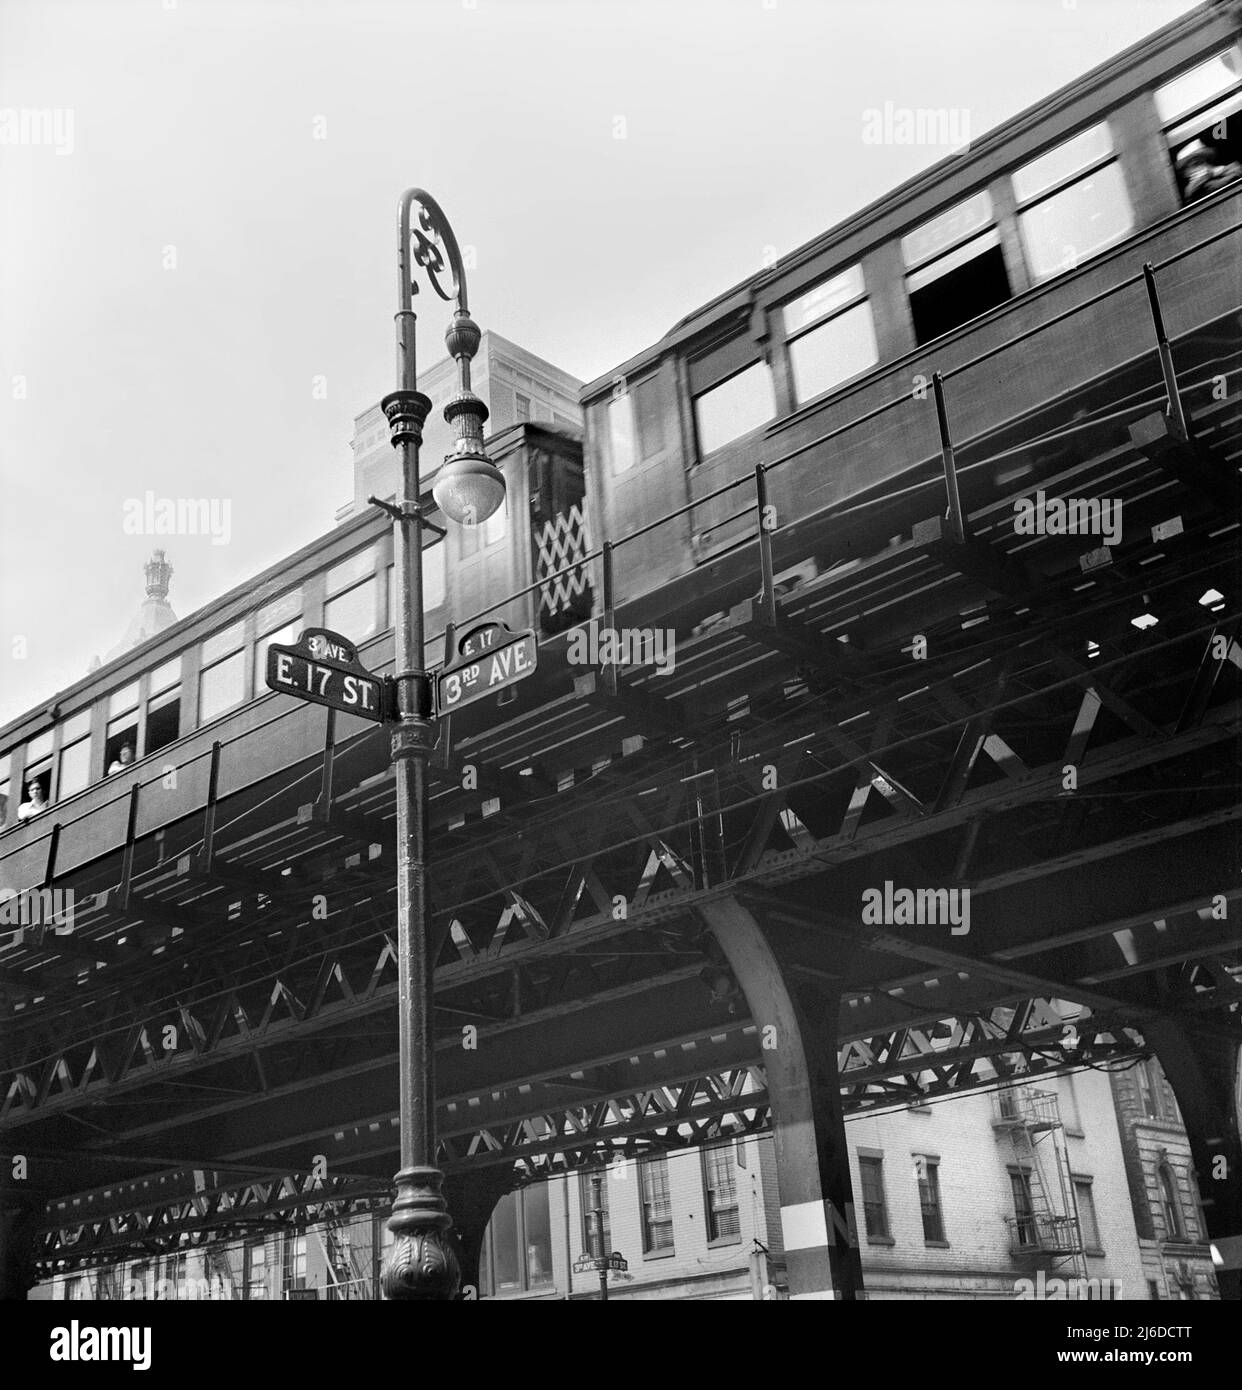 Third Avenue Elevated Railway à 17th Street, New York City, New York, États-Unis, Marjory Collins, U.S. Office of War information/États-Unis Administration de la sécurité agricole, septembre 1942 Banque D'Images